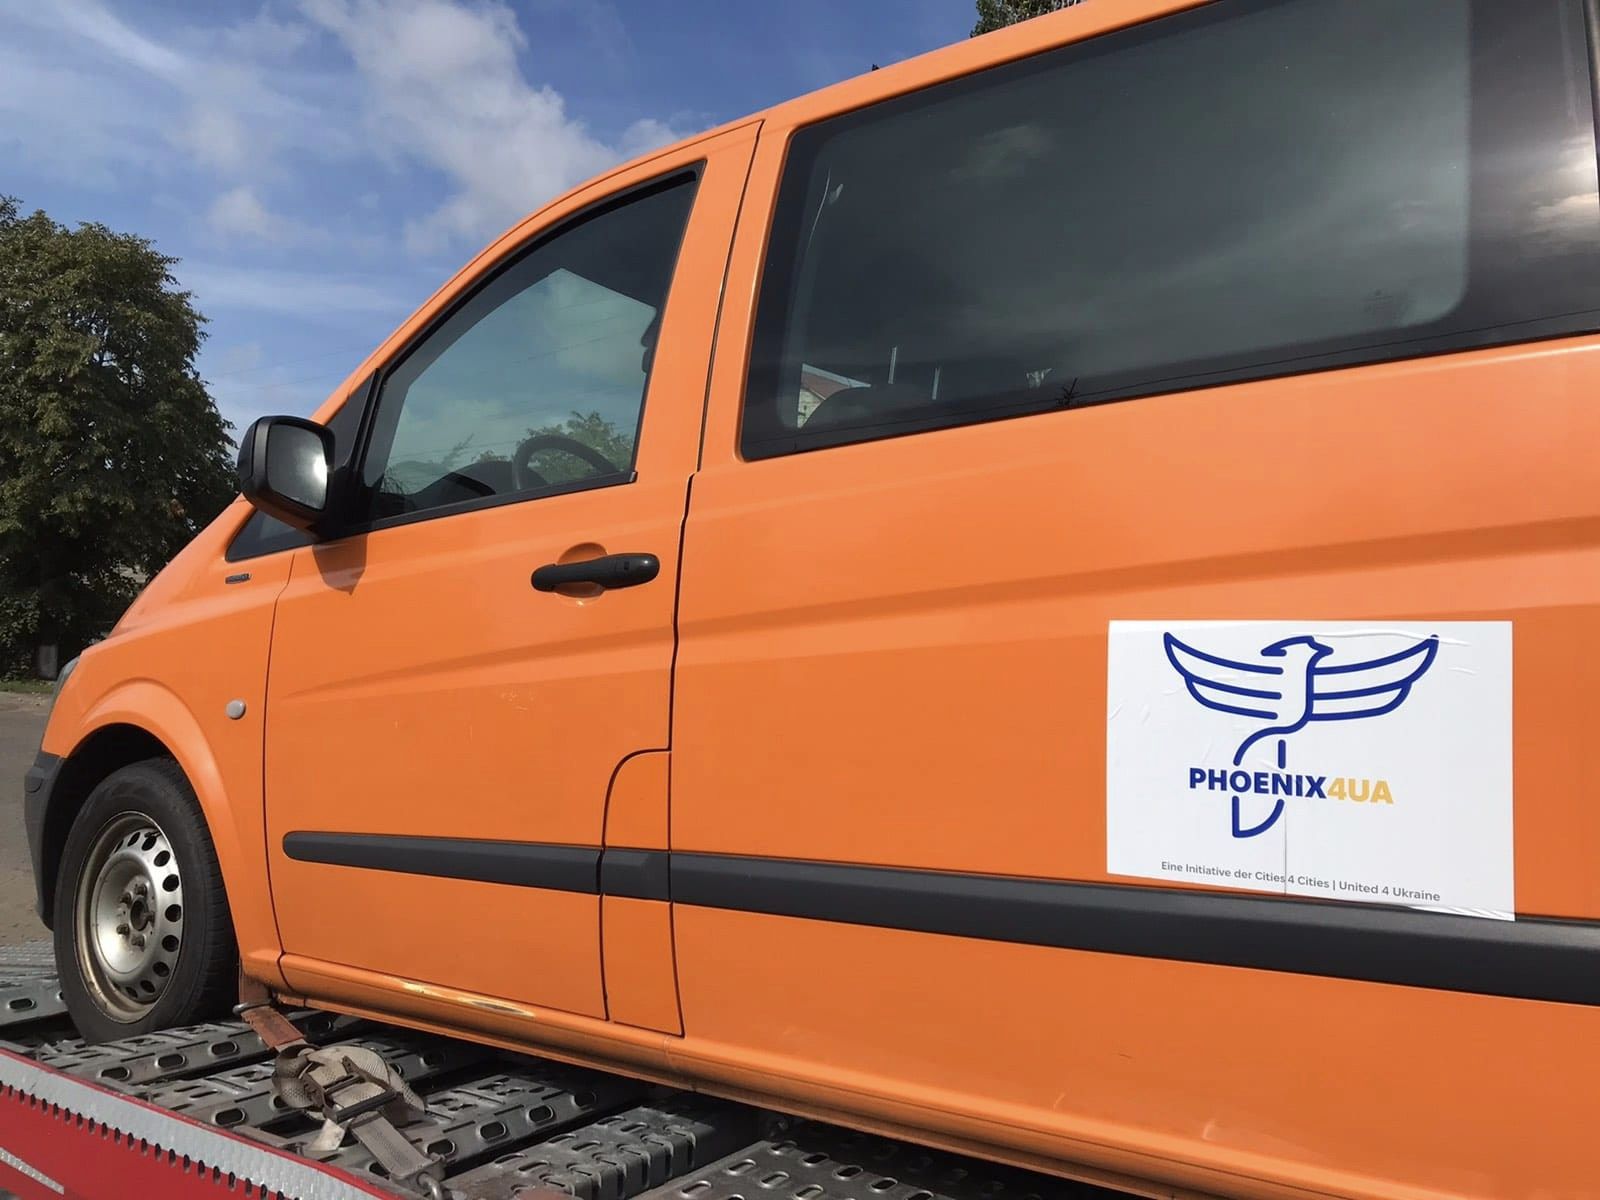 Шабівська сільська громада продовжує отримувати допомогу від Німеччини - до пожежного автомобіля додався мікроавтобус